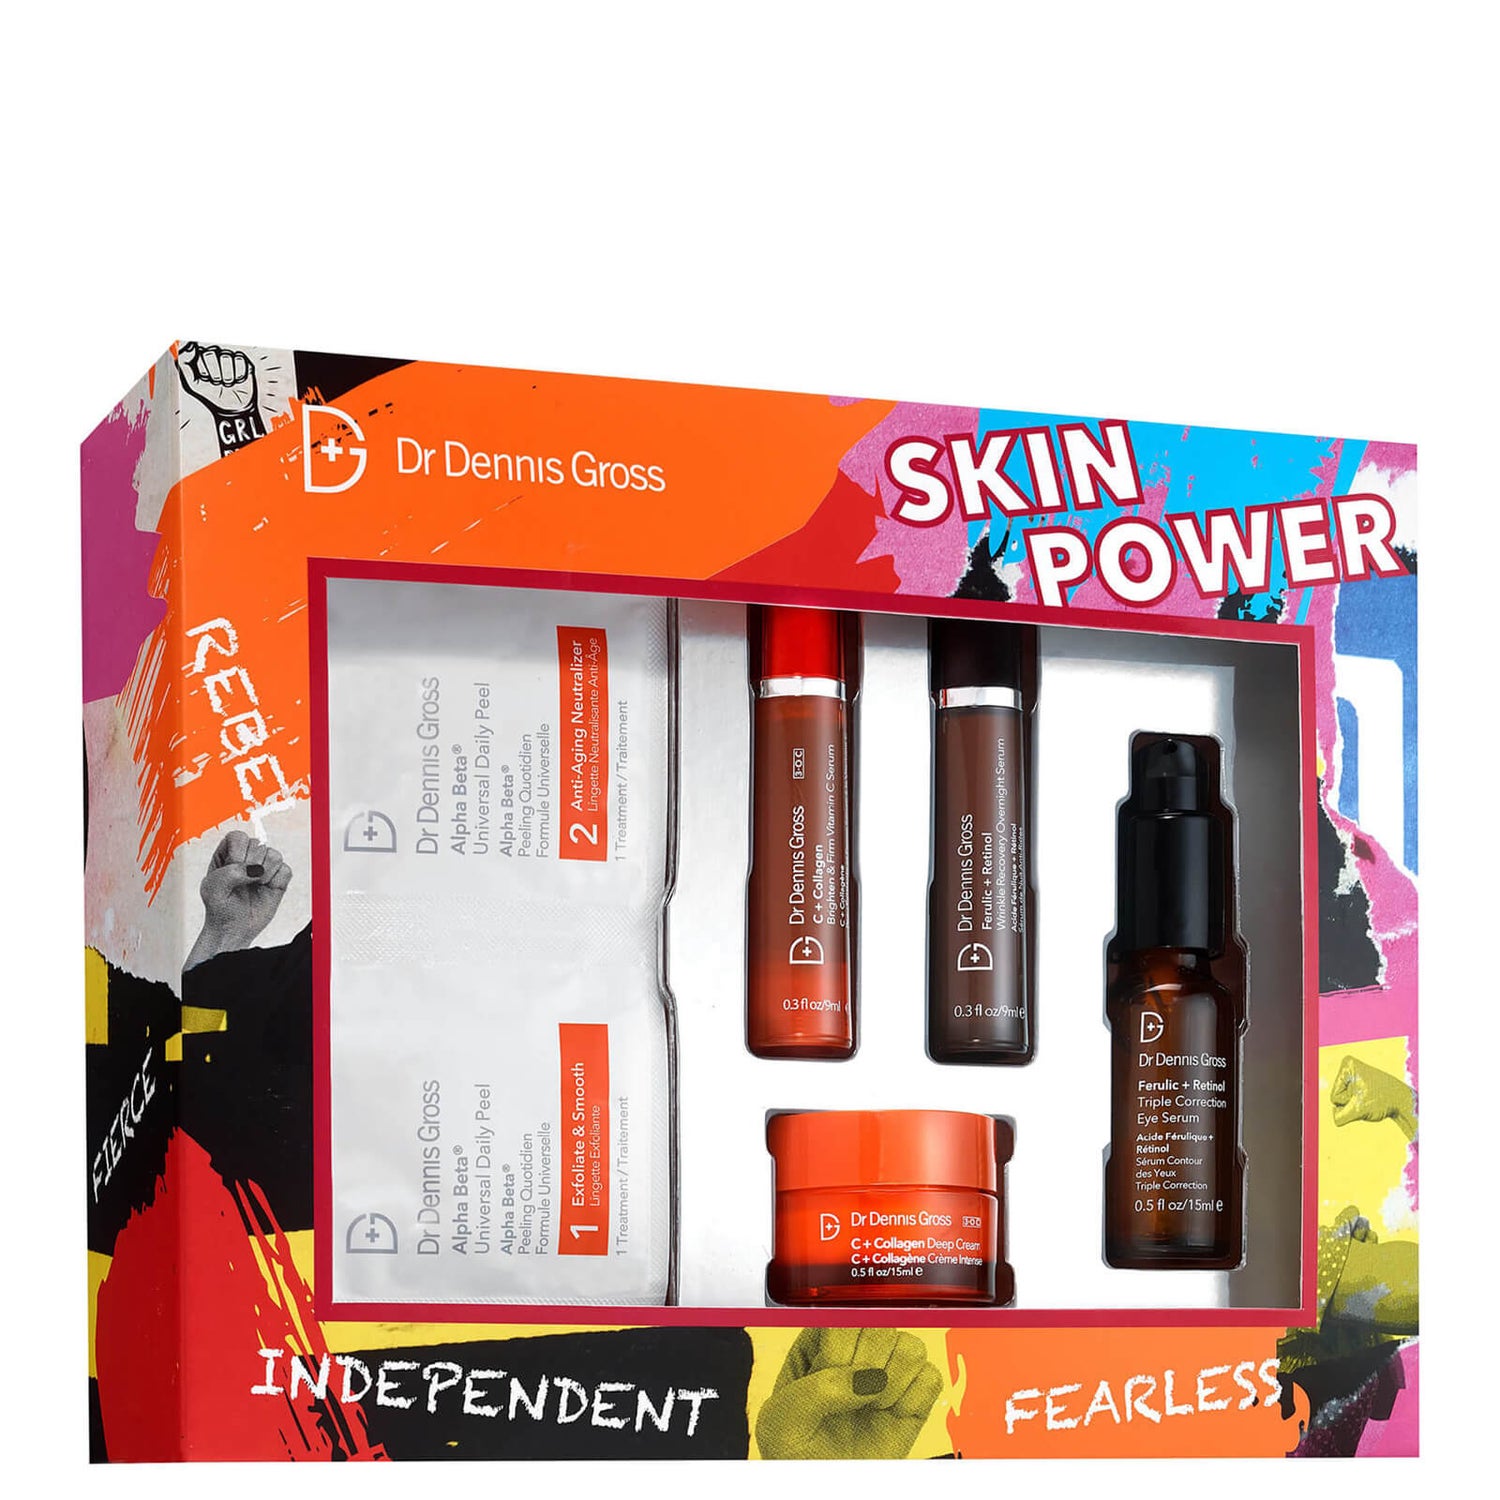 Dr Dennis Gross Skincare Skin Power (worth £149)